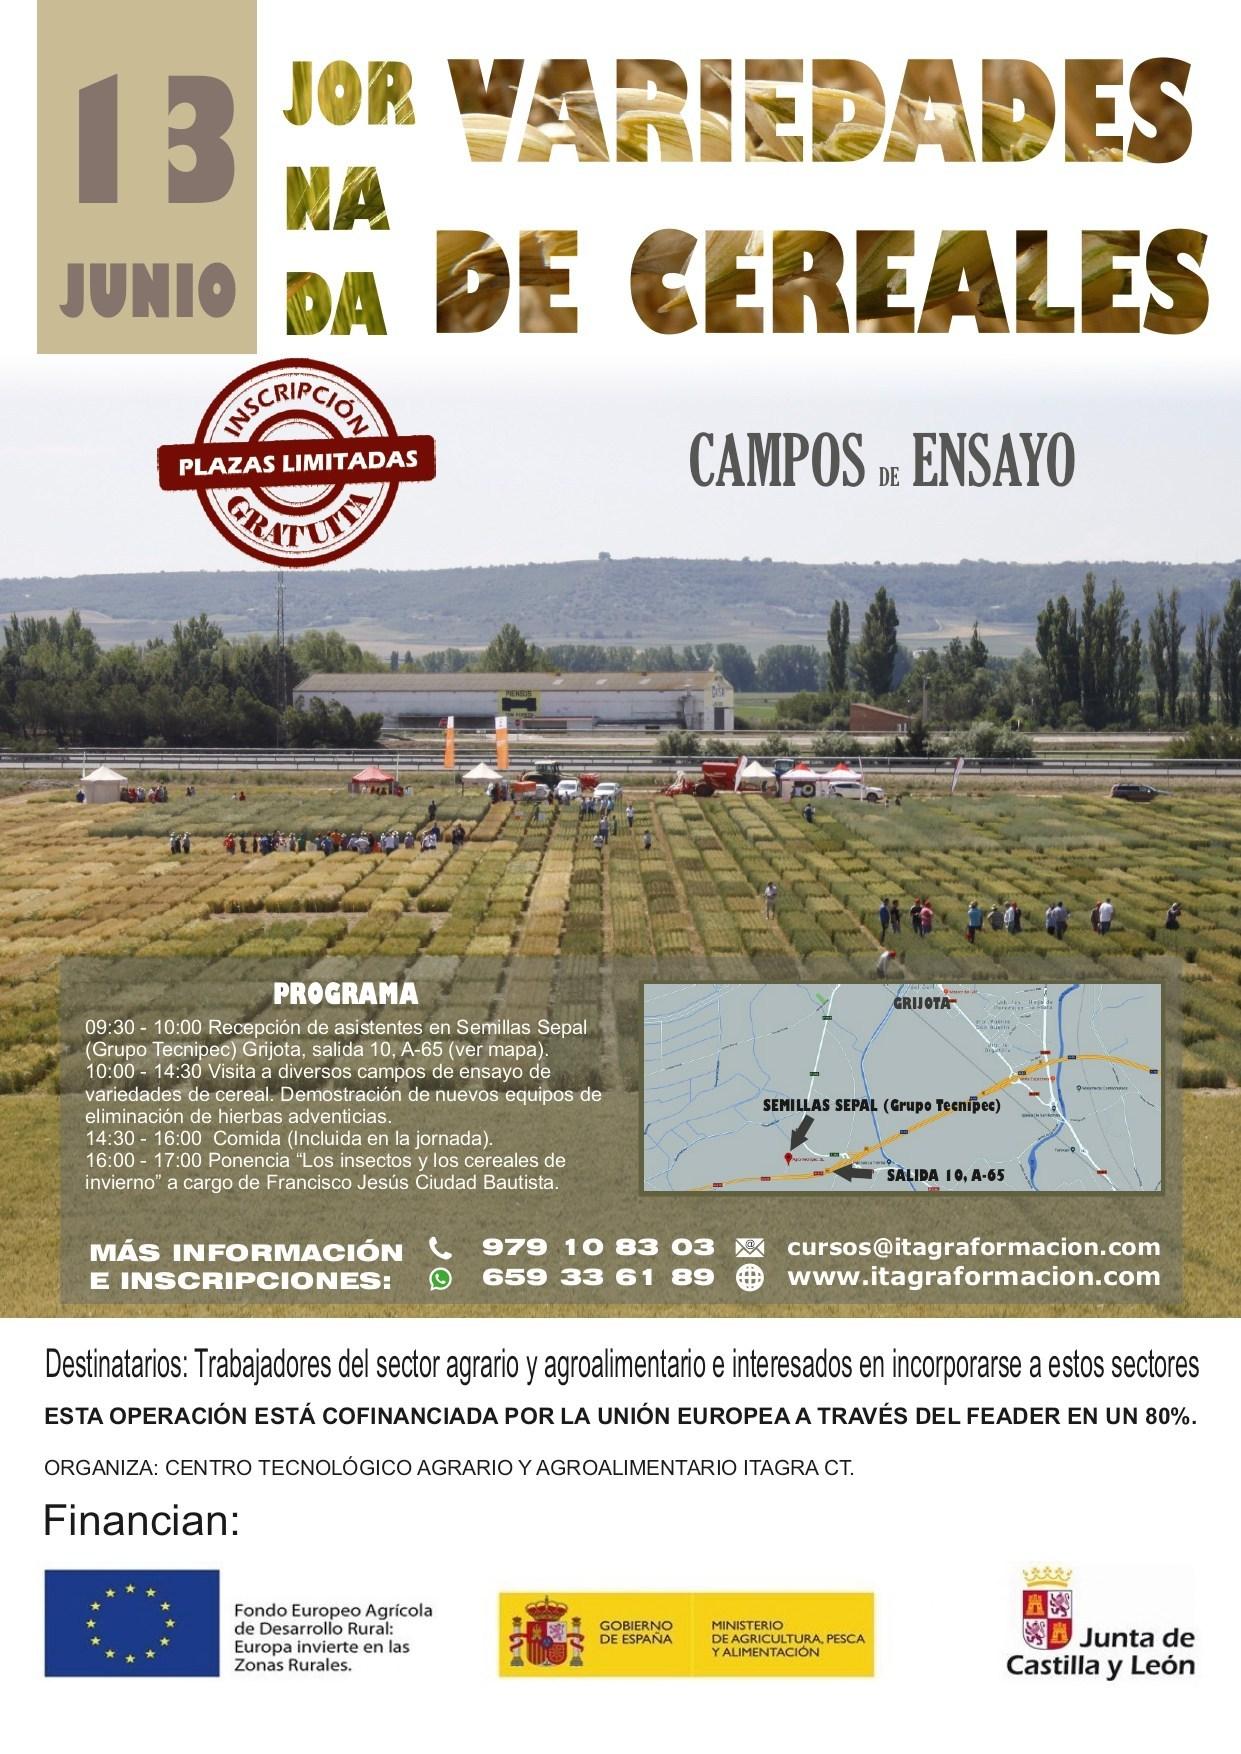 Jornada sobre variedades de cereales en campos de ensayo